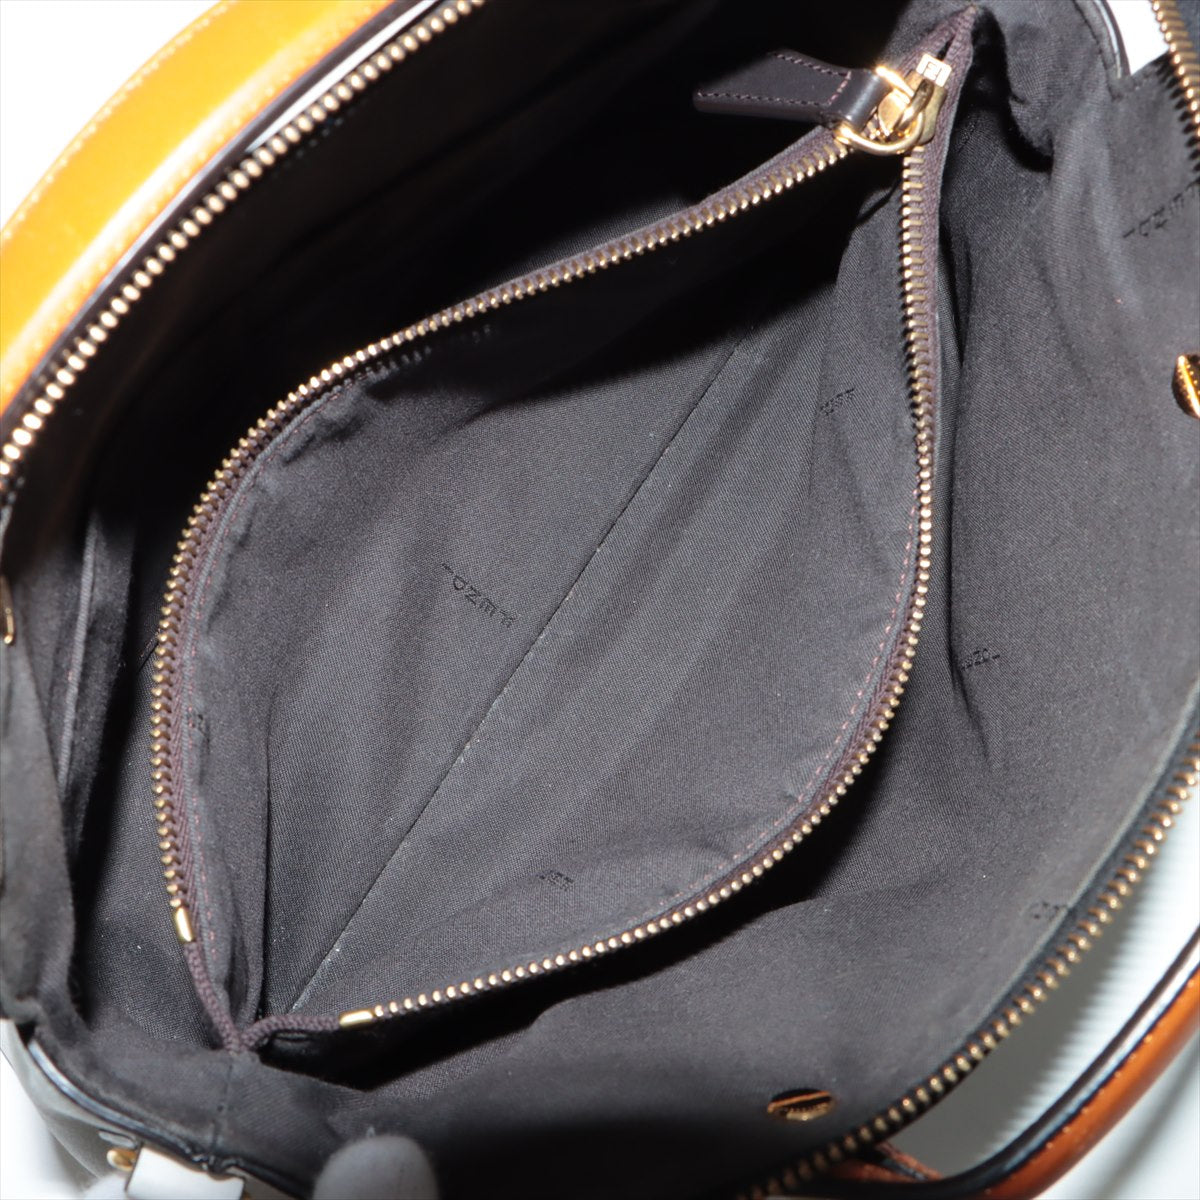 Fendi Byzaw Medium Leather Handbag White 8BL146